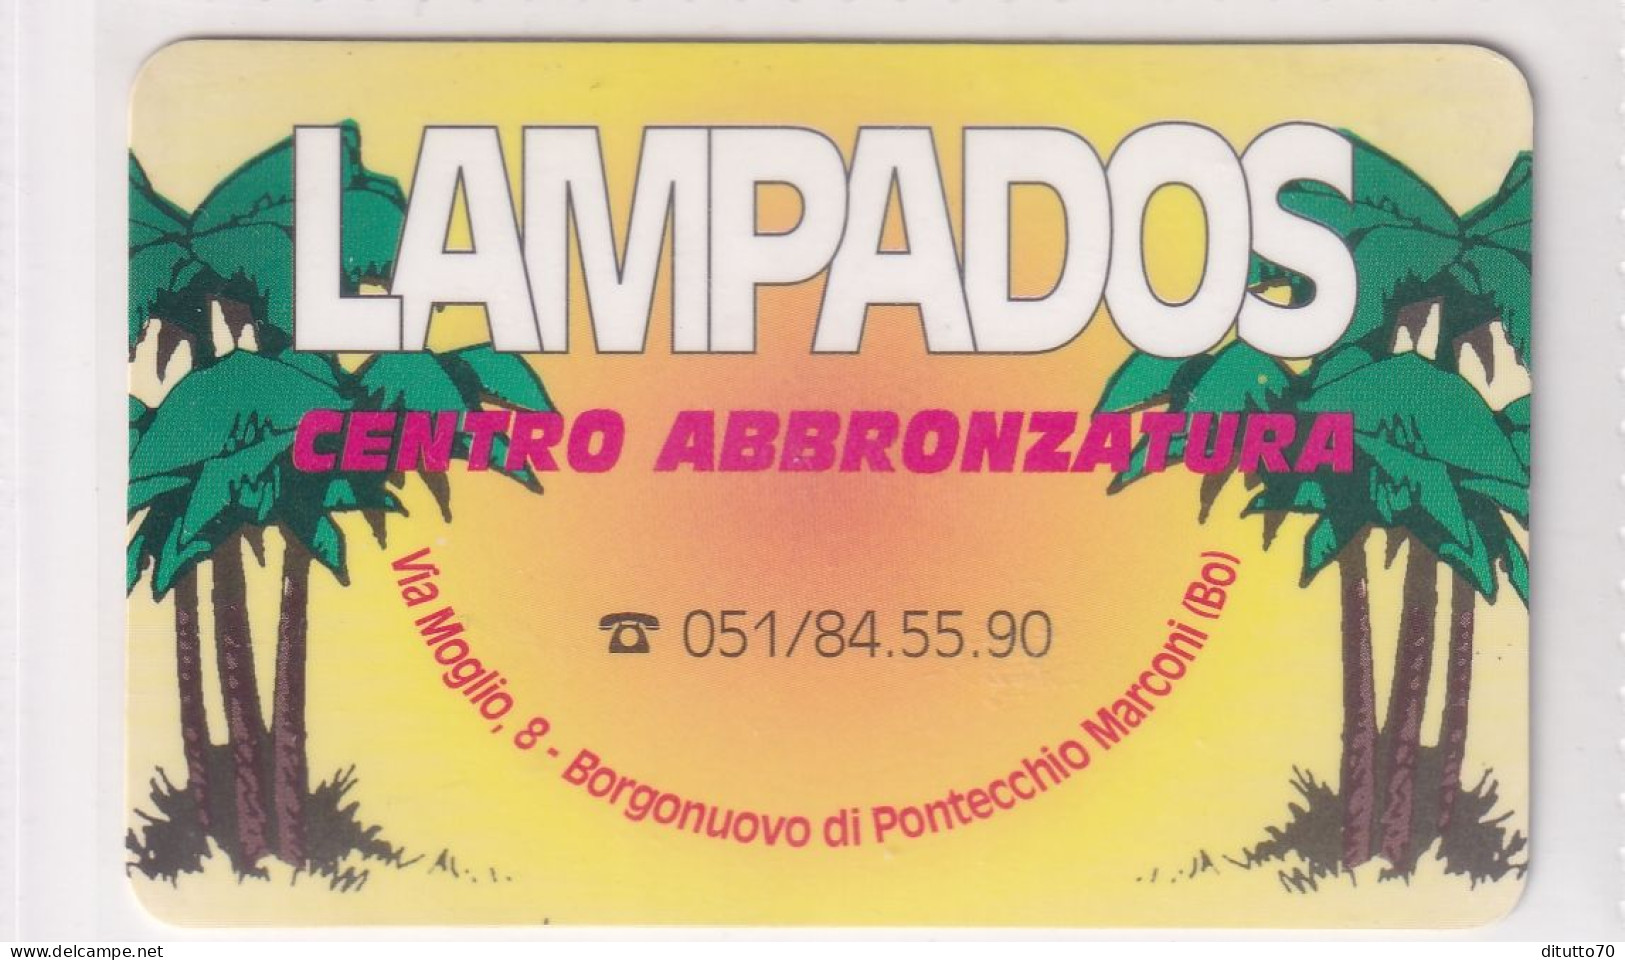 Calendarietto - Lampados - Borgonuovo Di Pontecchio Marconi - Anno 1997 - Small : 1991-00